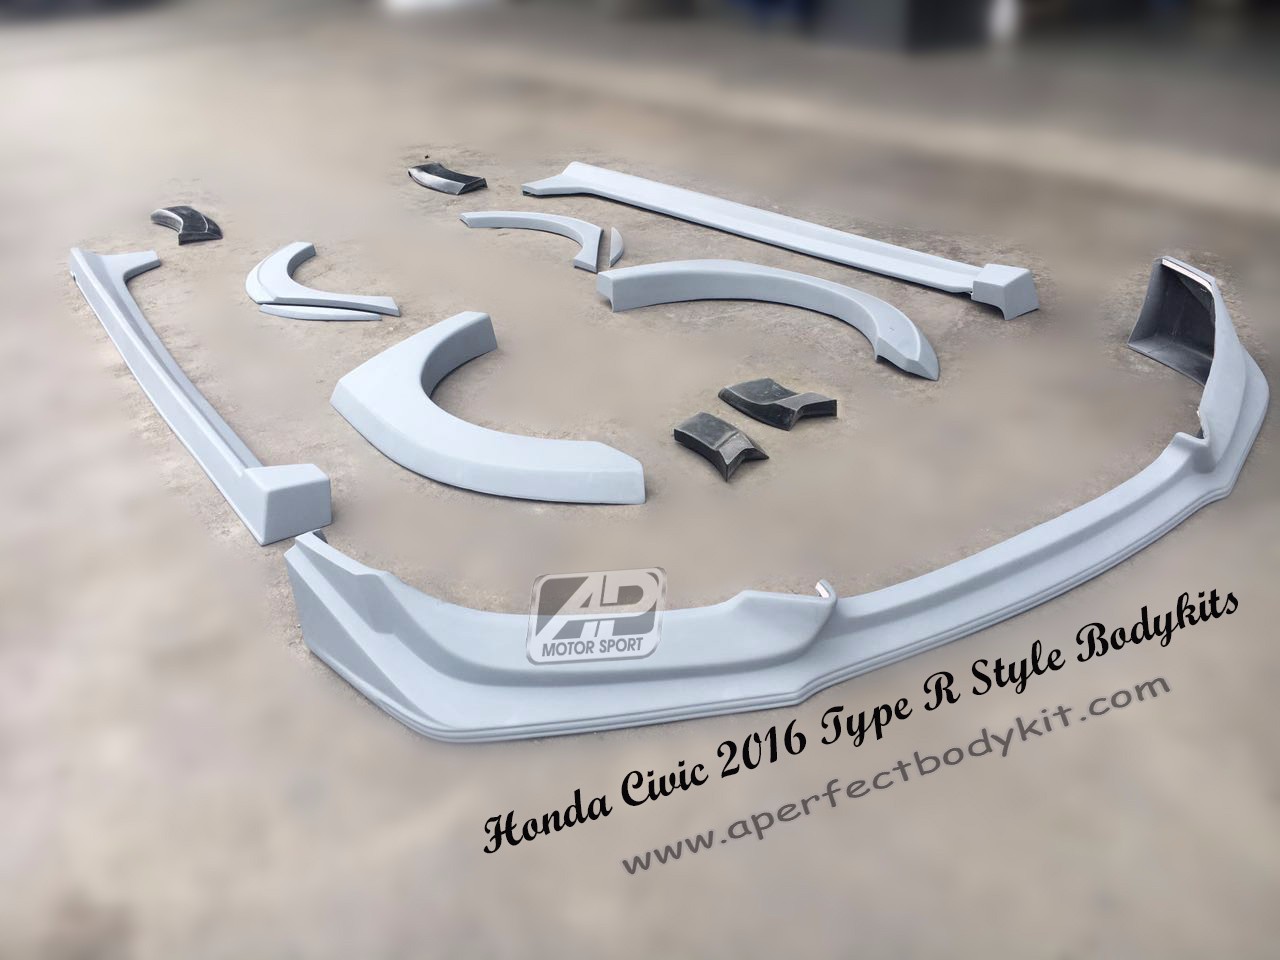 Honda Civic 2016 TR Style Bodykits 